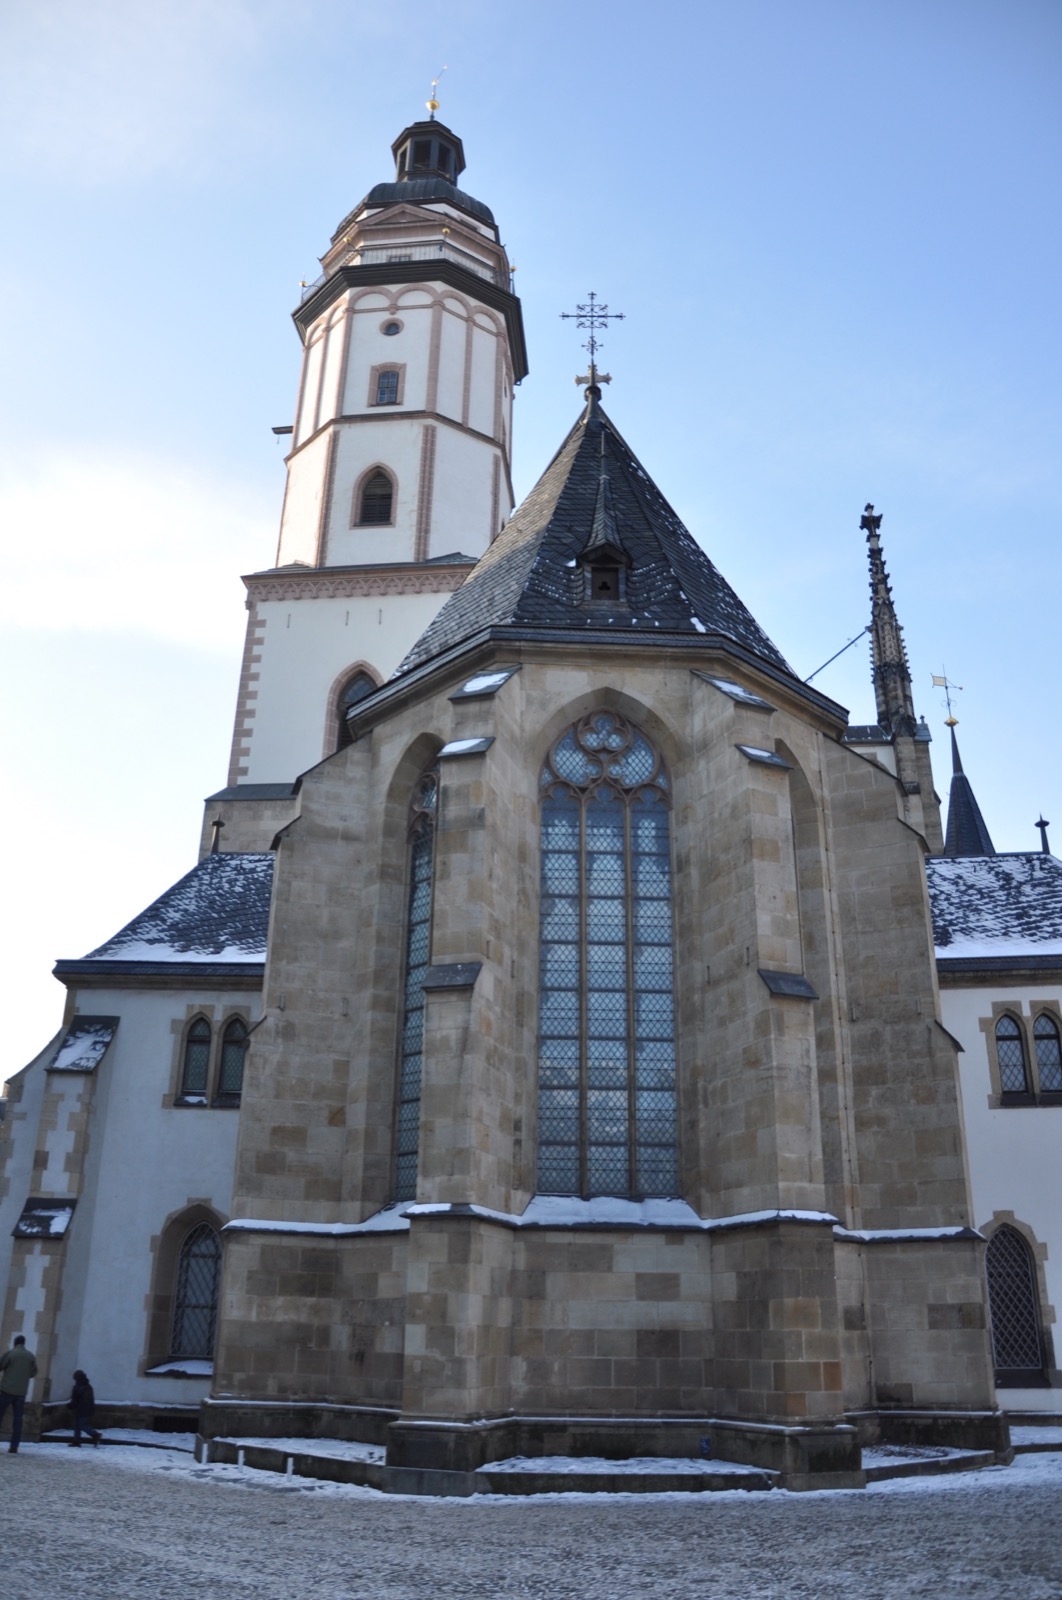 Церковь Святого Фомы (Томаскирхе) в Лейпциге